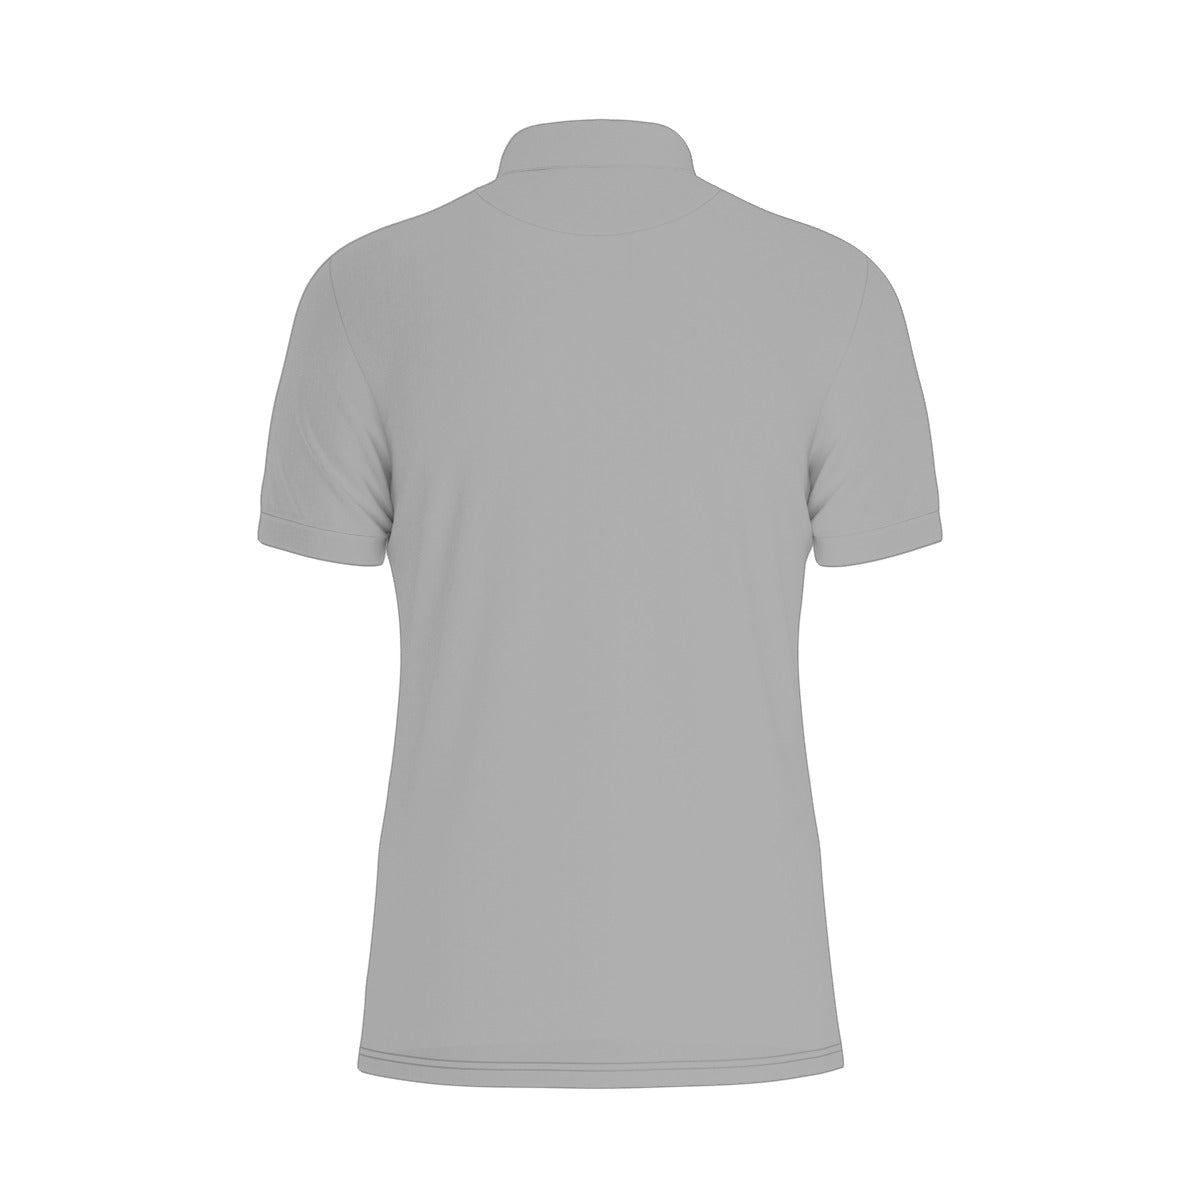 Sixty Eight 93 Logo White Grey Men's Stretch Polo Shirt